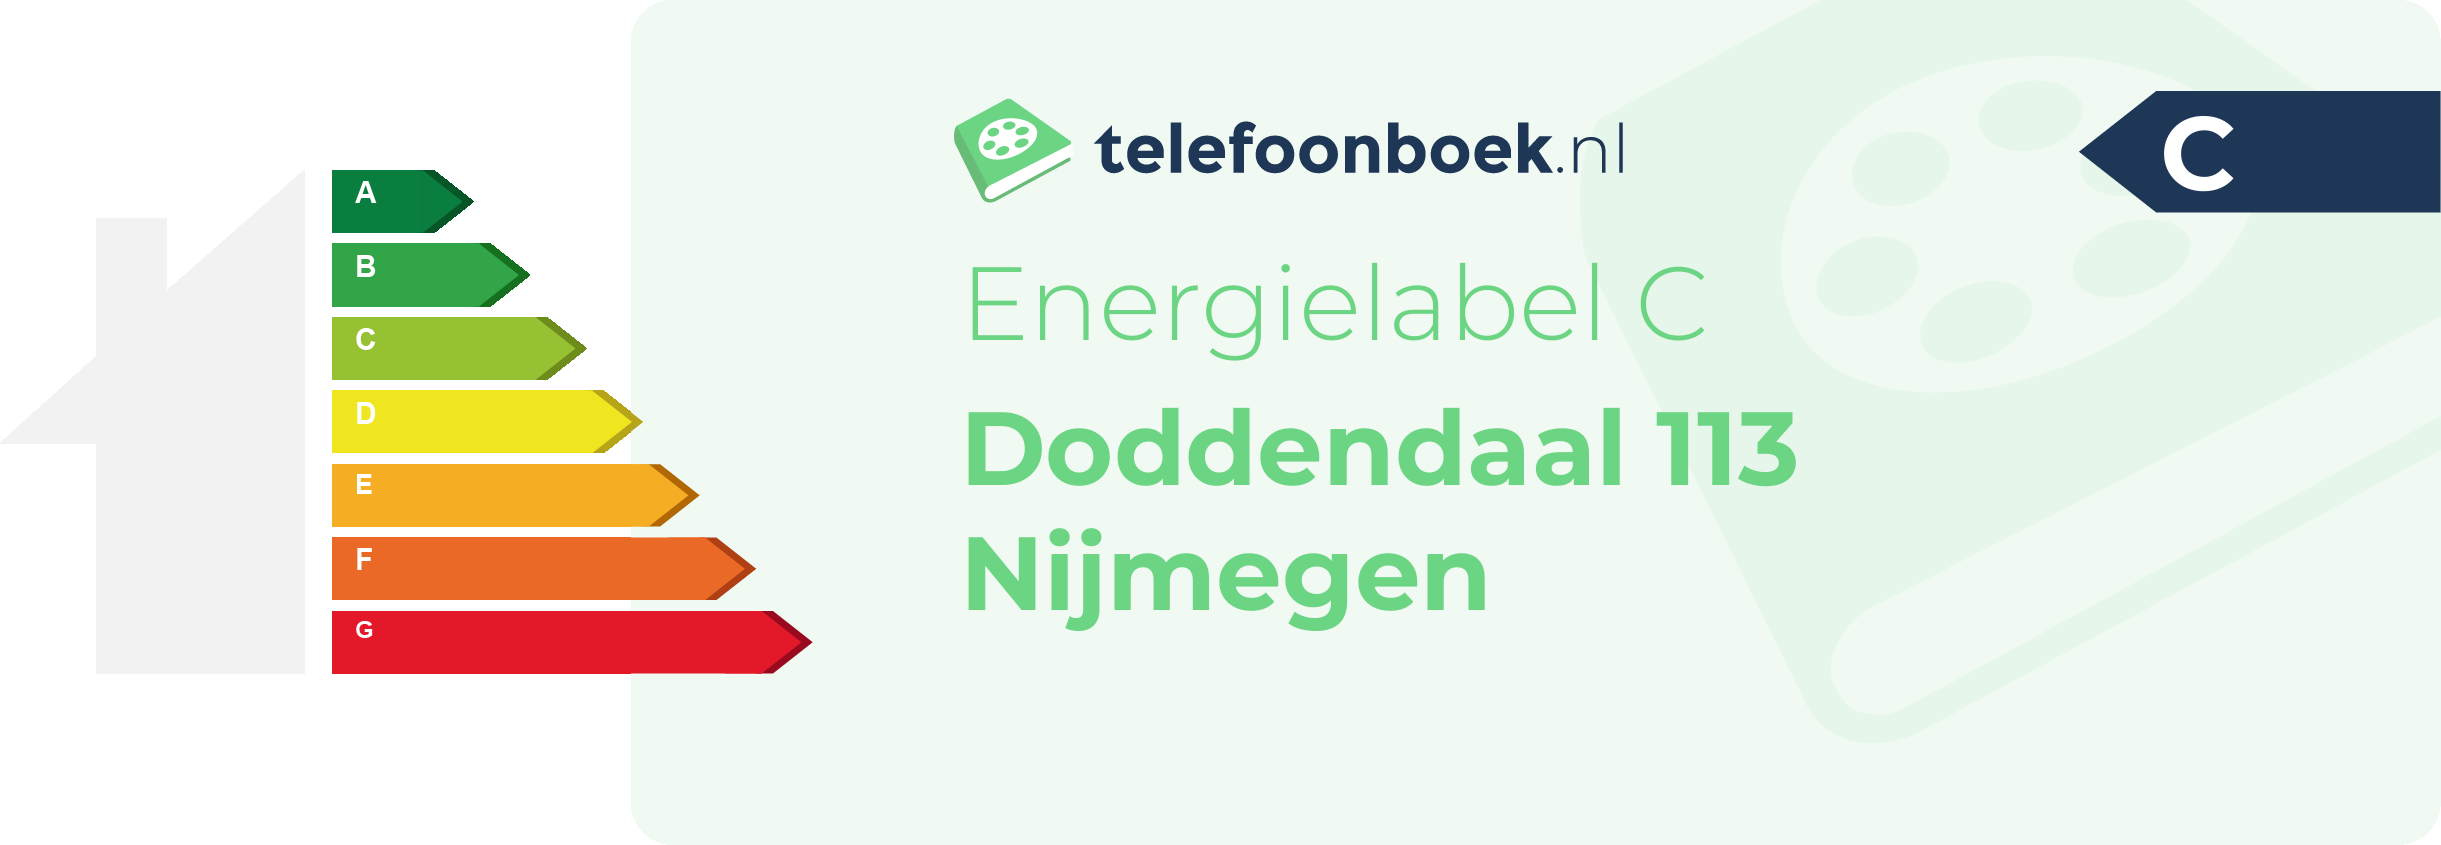 Energielabel Doddendaal 113 Nijmegen